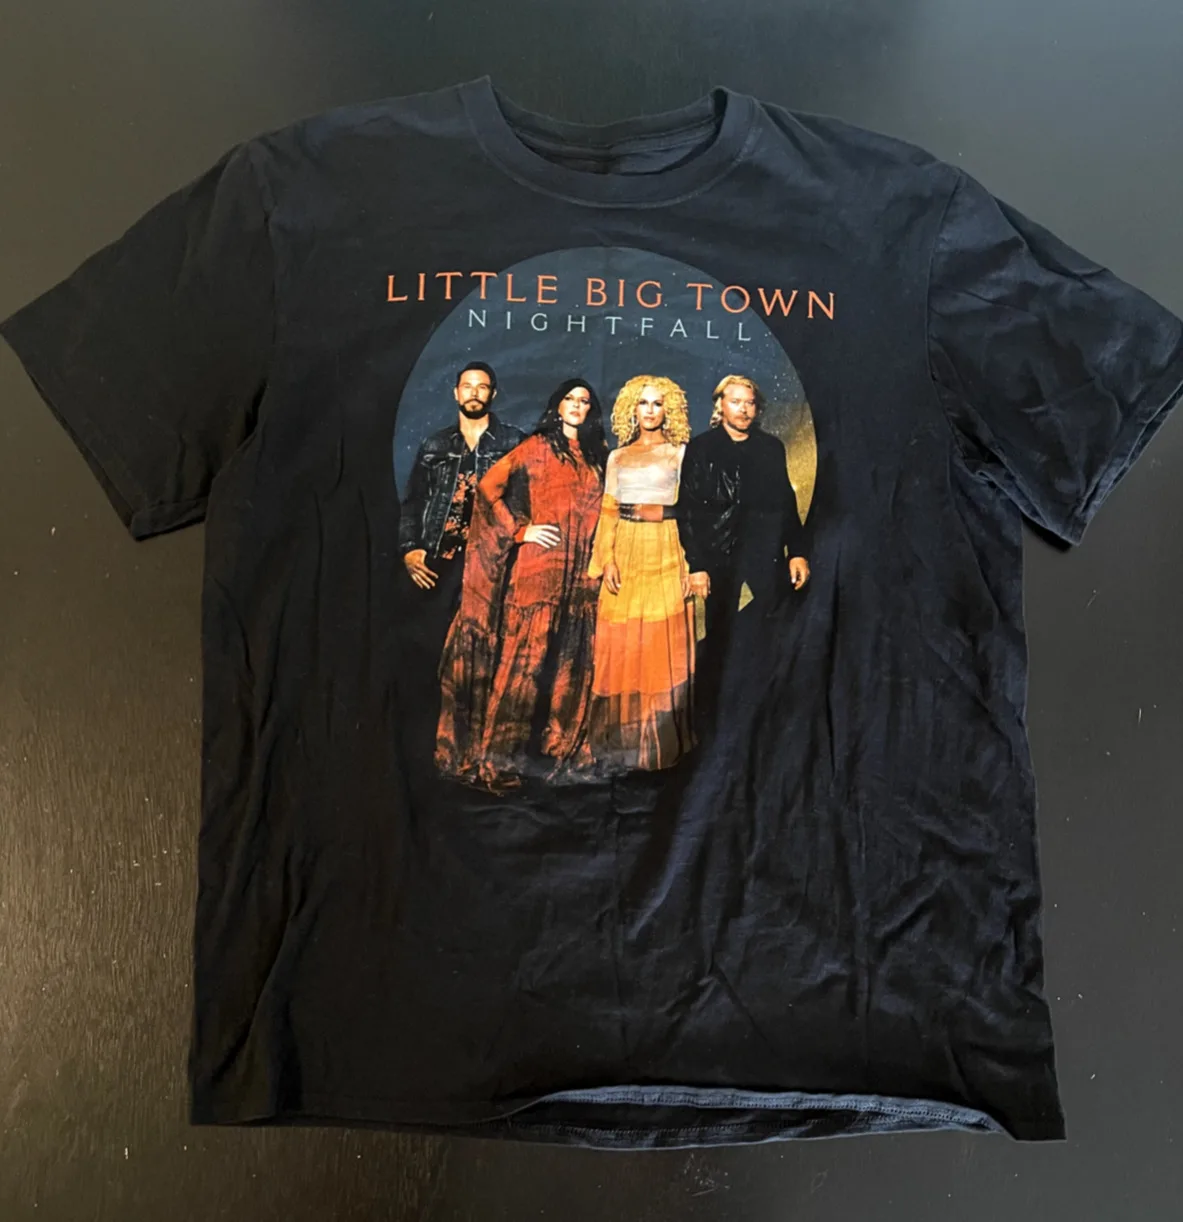 Тениска с концертна кръг на Little Big Town Nightfall, размер: XL, дълги ръкави